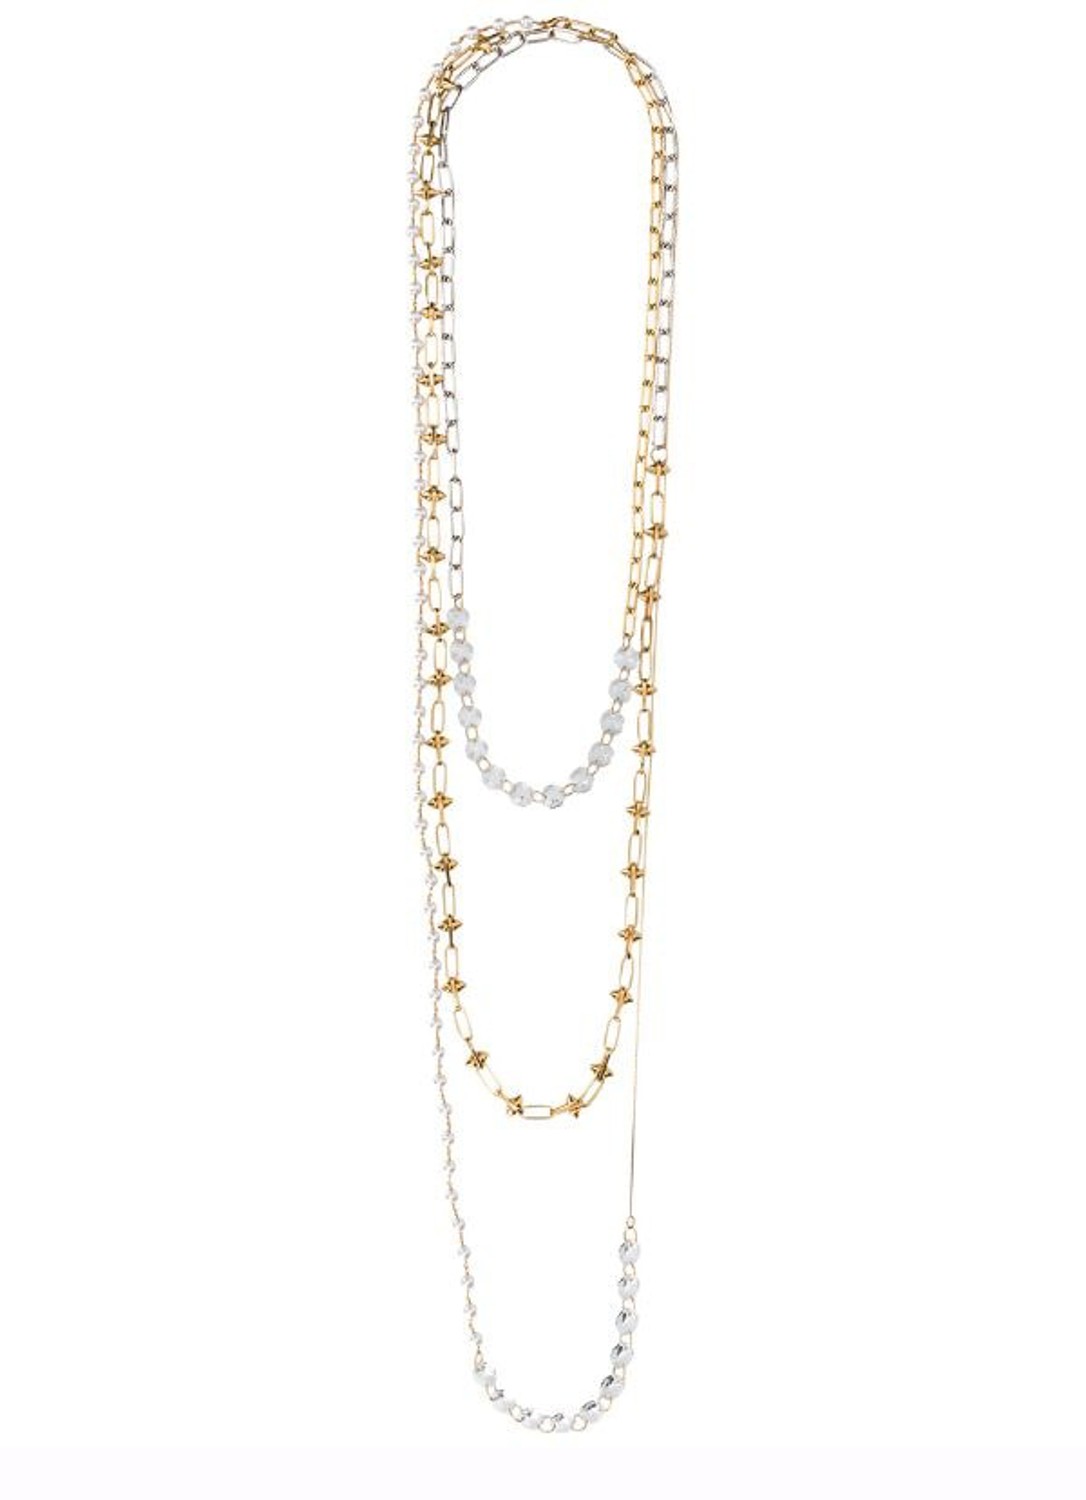 shop Marni  Bijoux: Bijoux Marni, collana a catena, in metallo, perle e vetro.

Composizione: 80% ottone, 20% vetro. number 1720